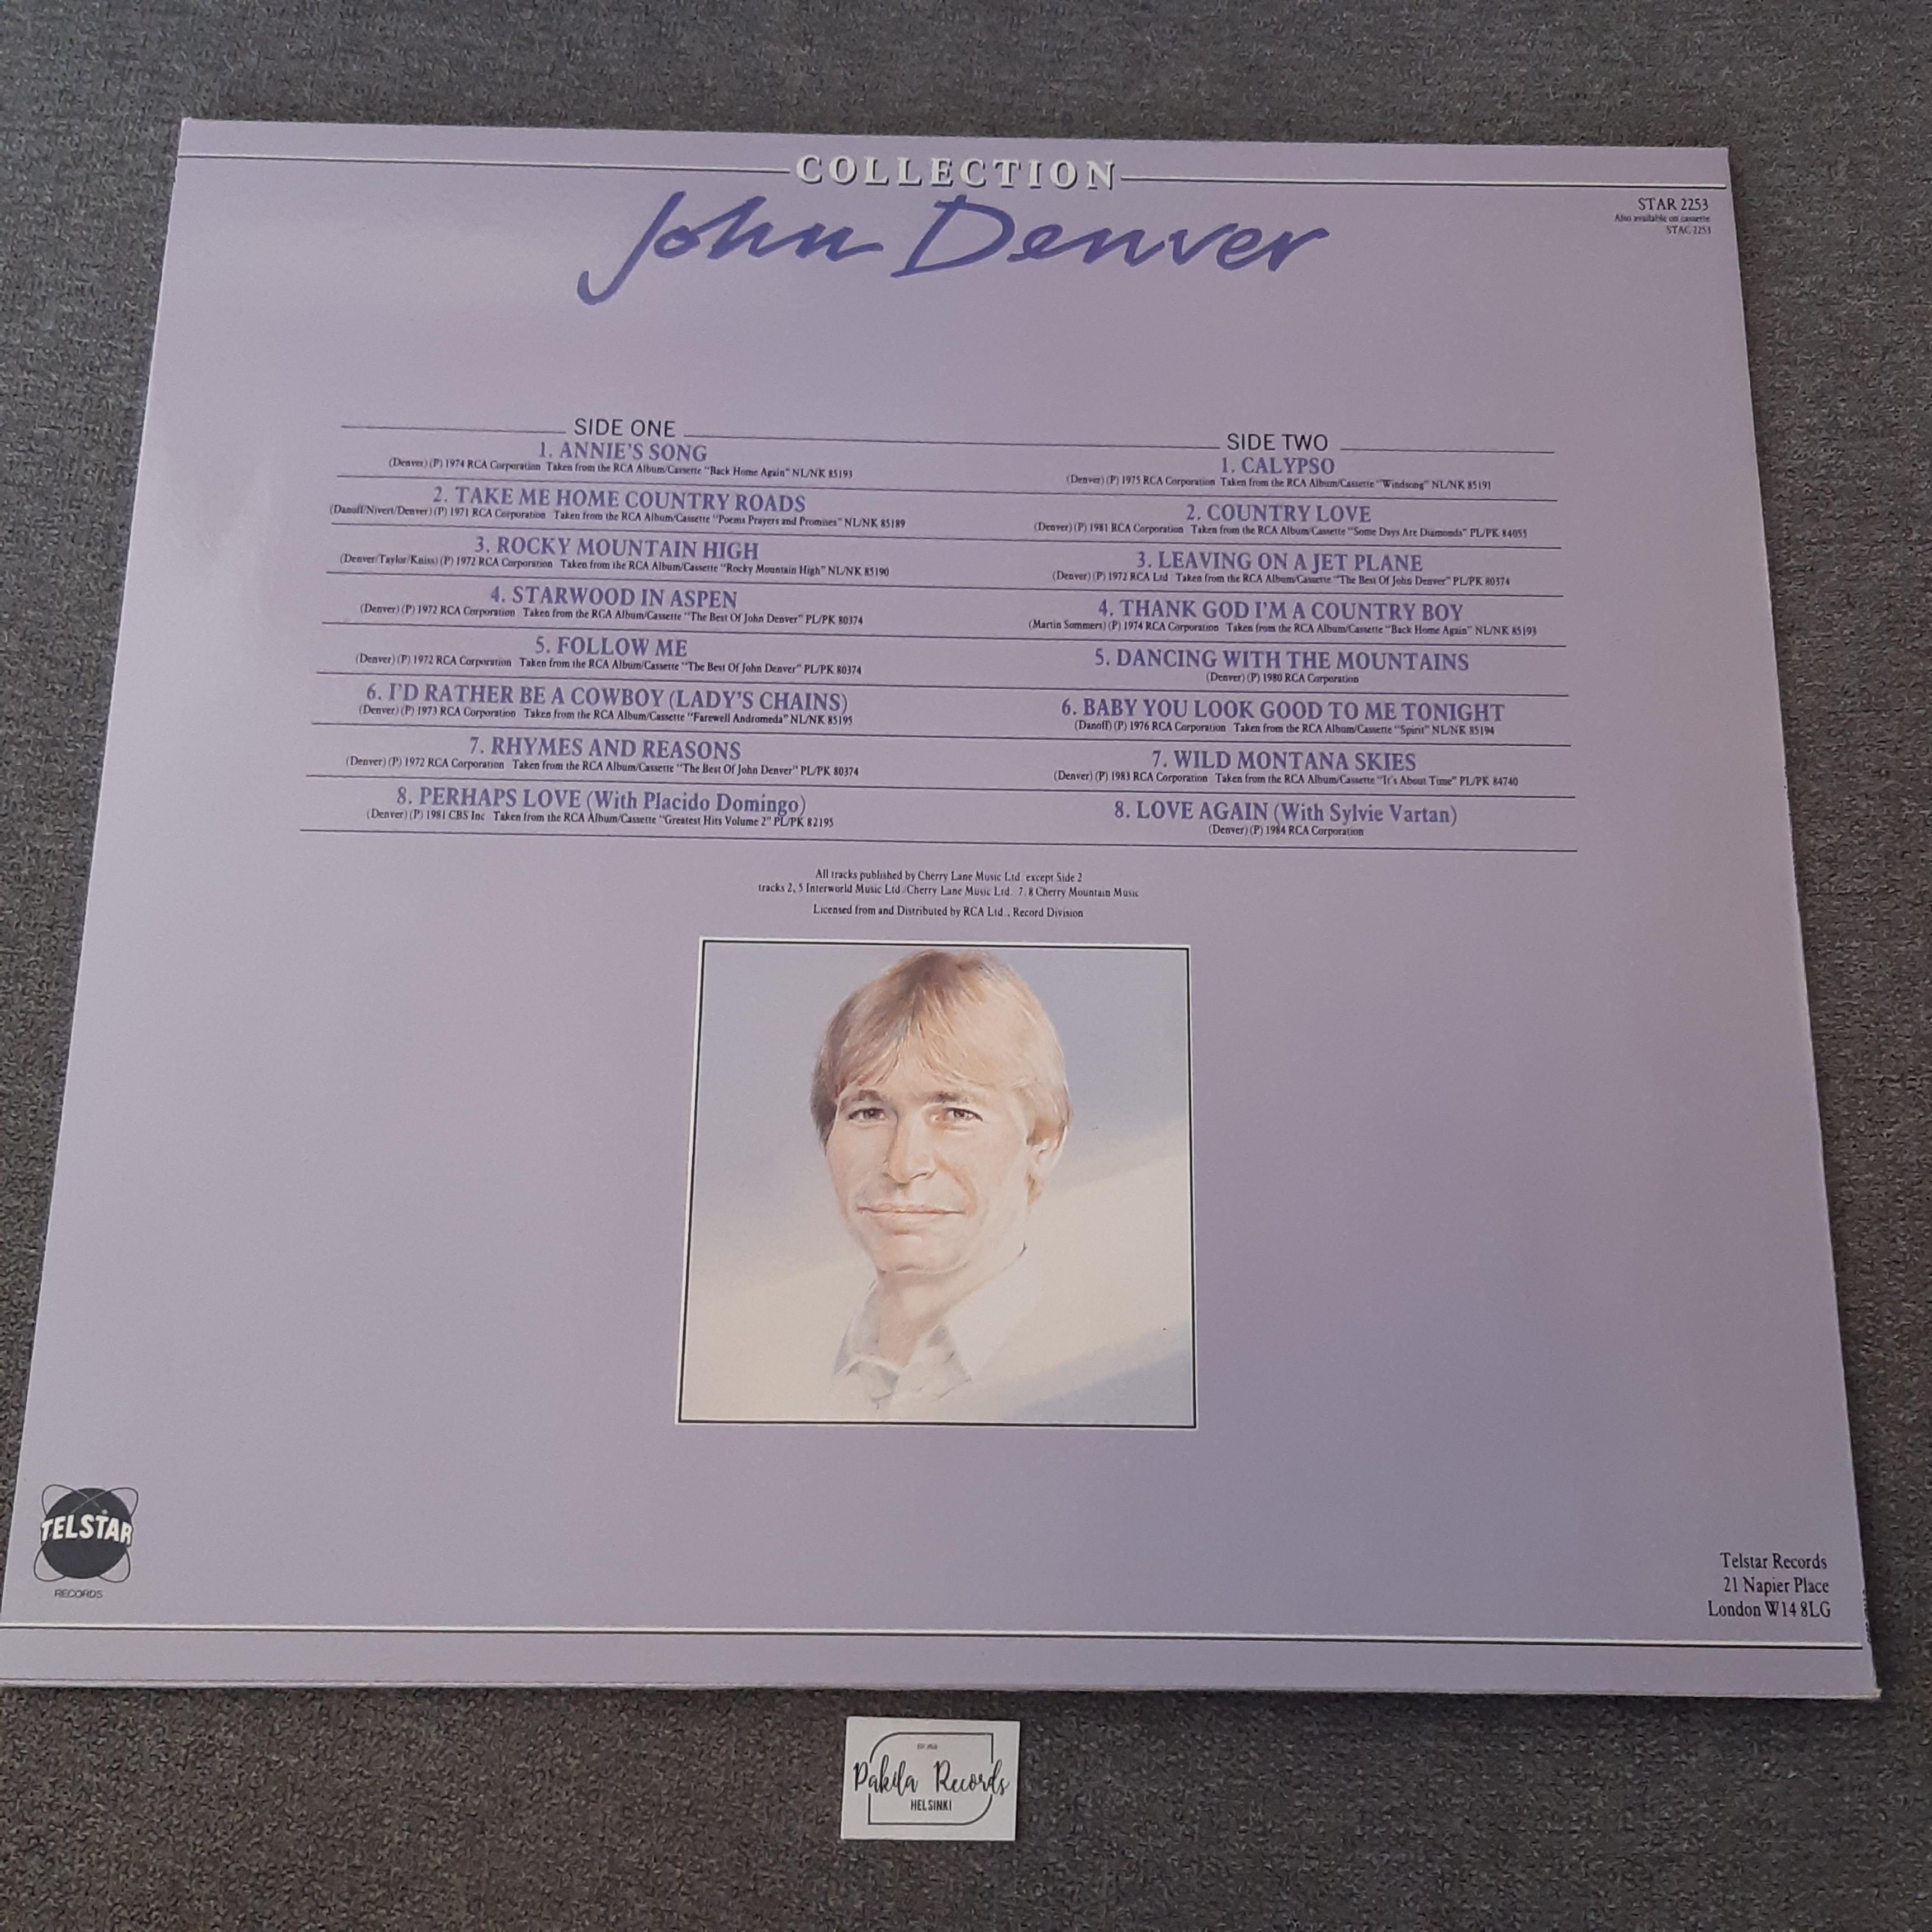 John Denver - John Denver Collection (16 Classic Songs) - LP (käytetty)